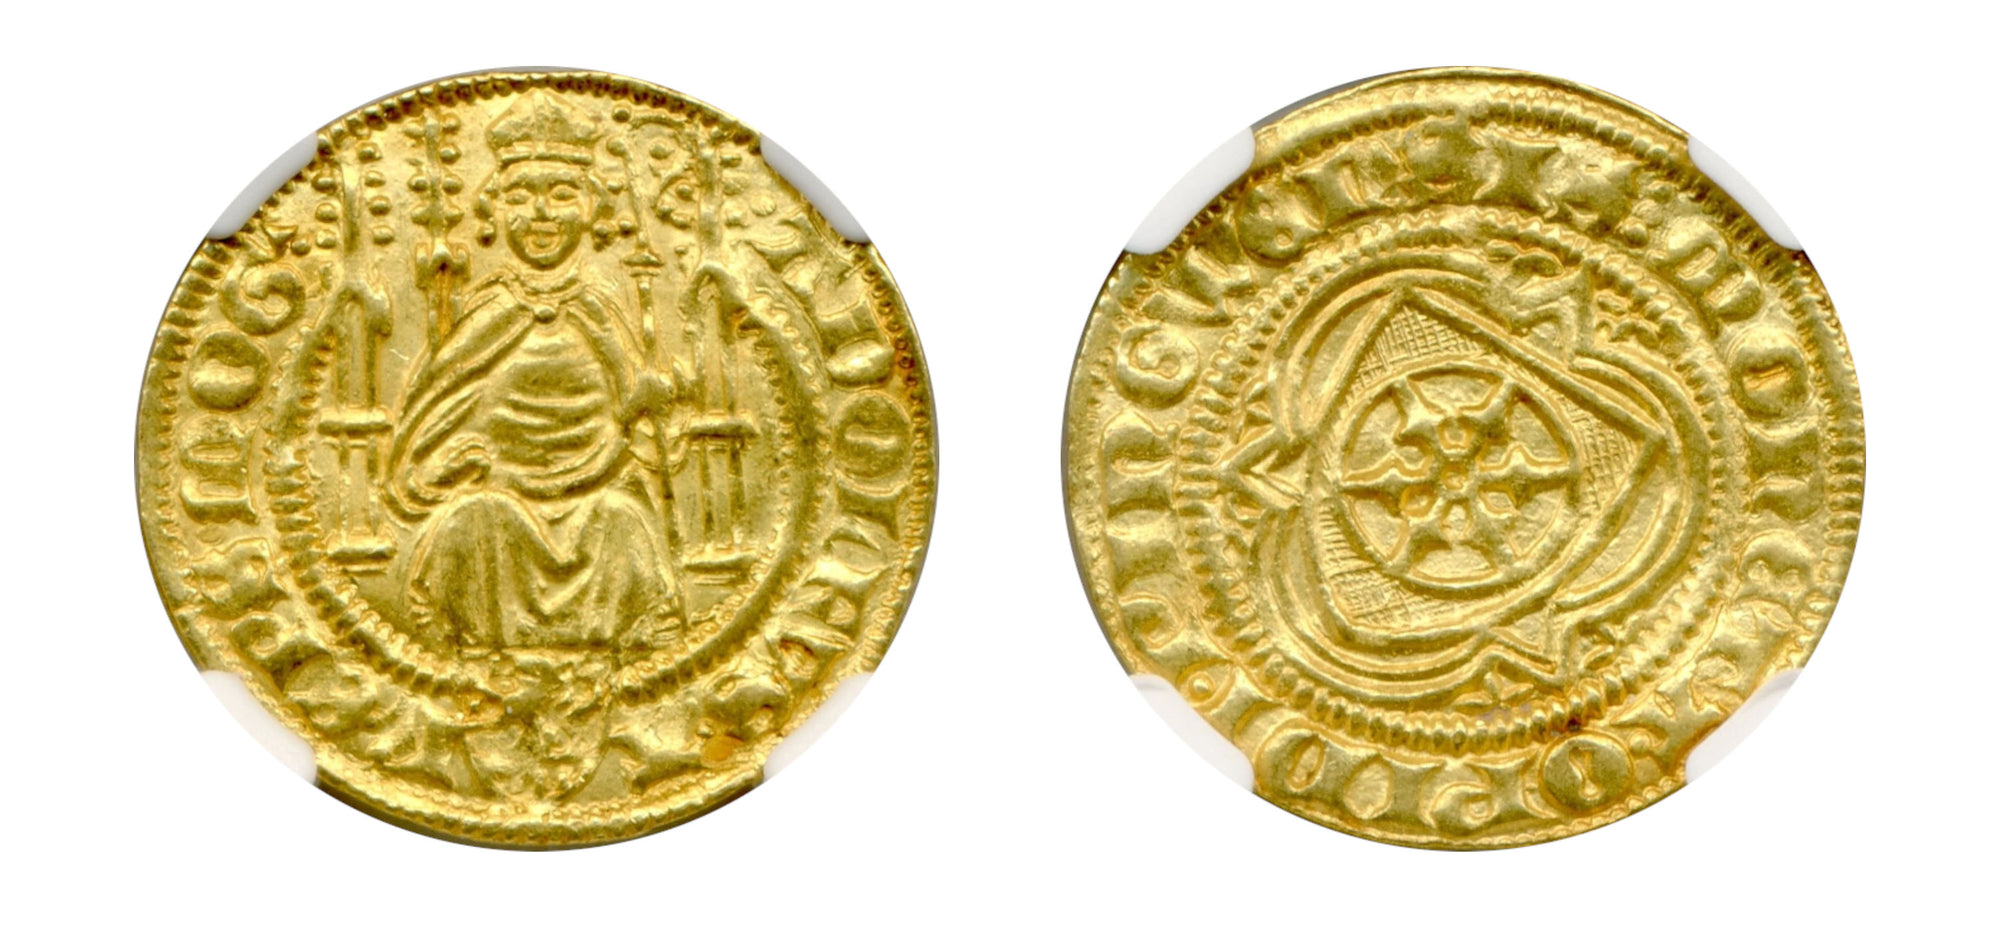 1372-1390 Germany Gulden NGC MS 63 - Hard Asset Management, Inc